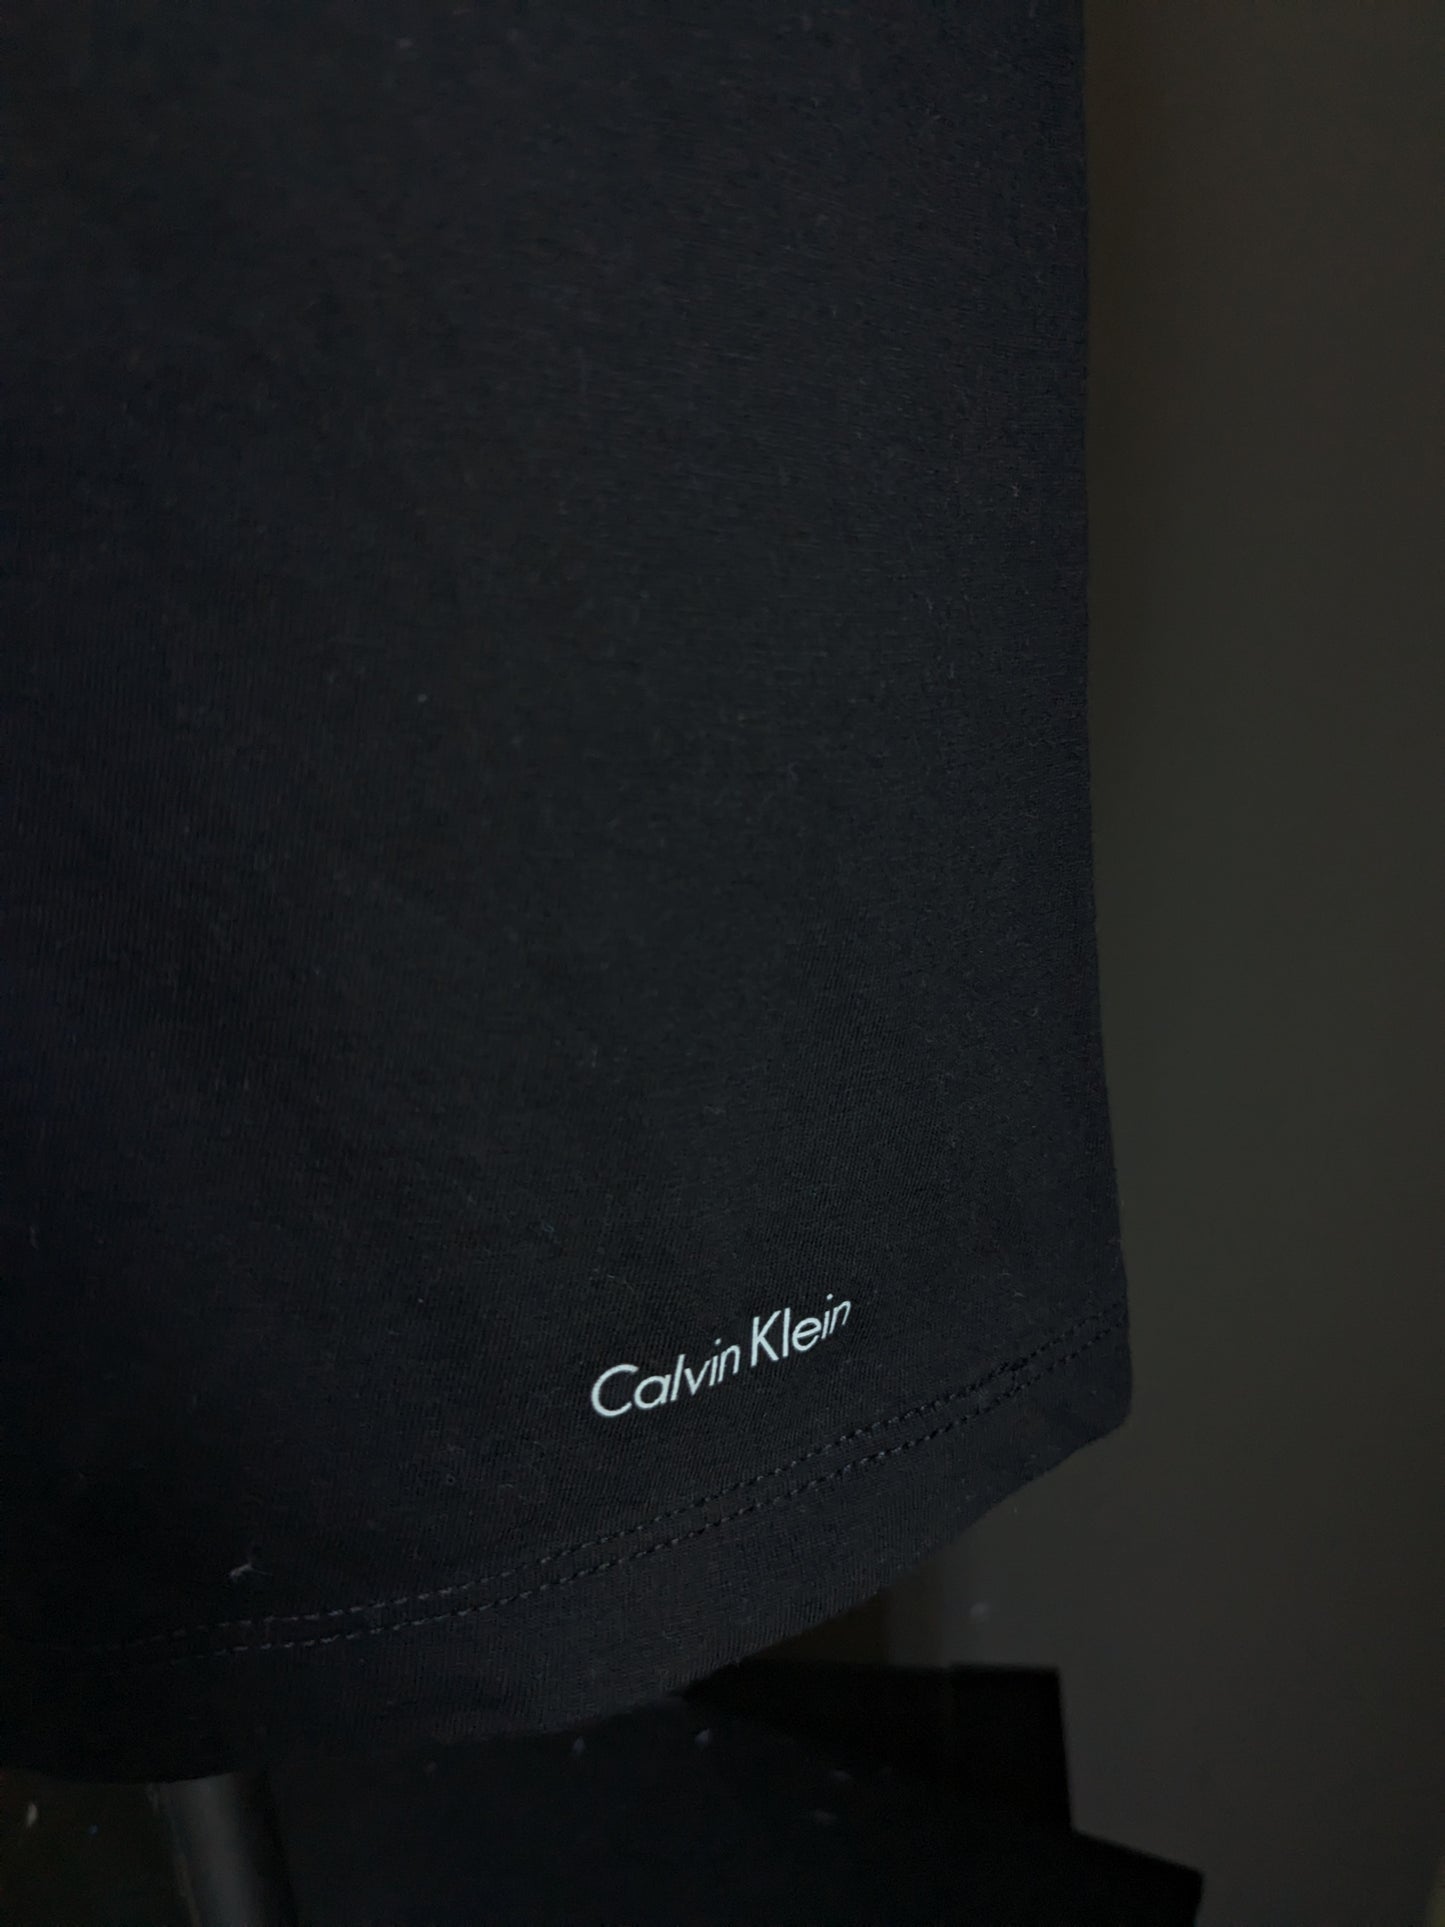 Calvin Small Shirt. Colorato nero. Taglia M.